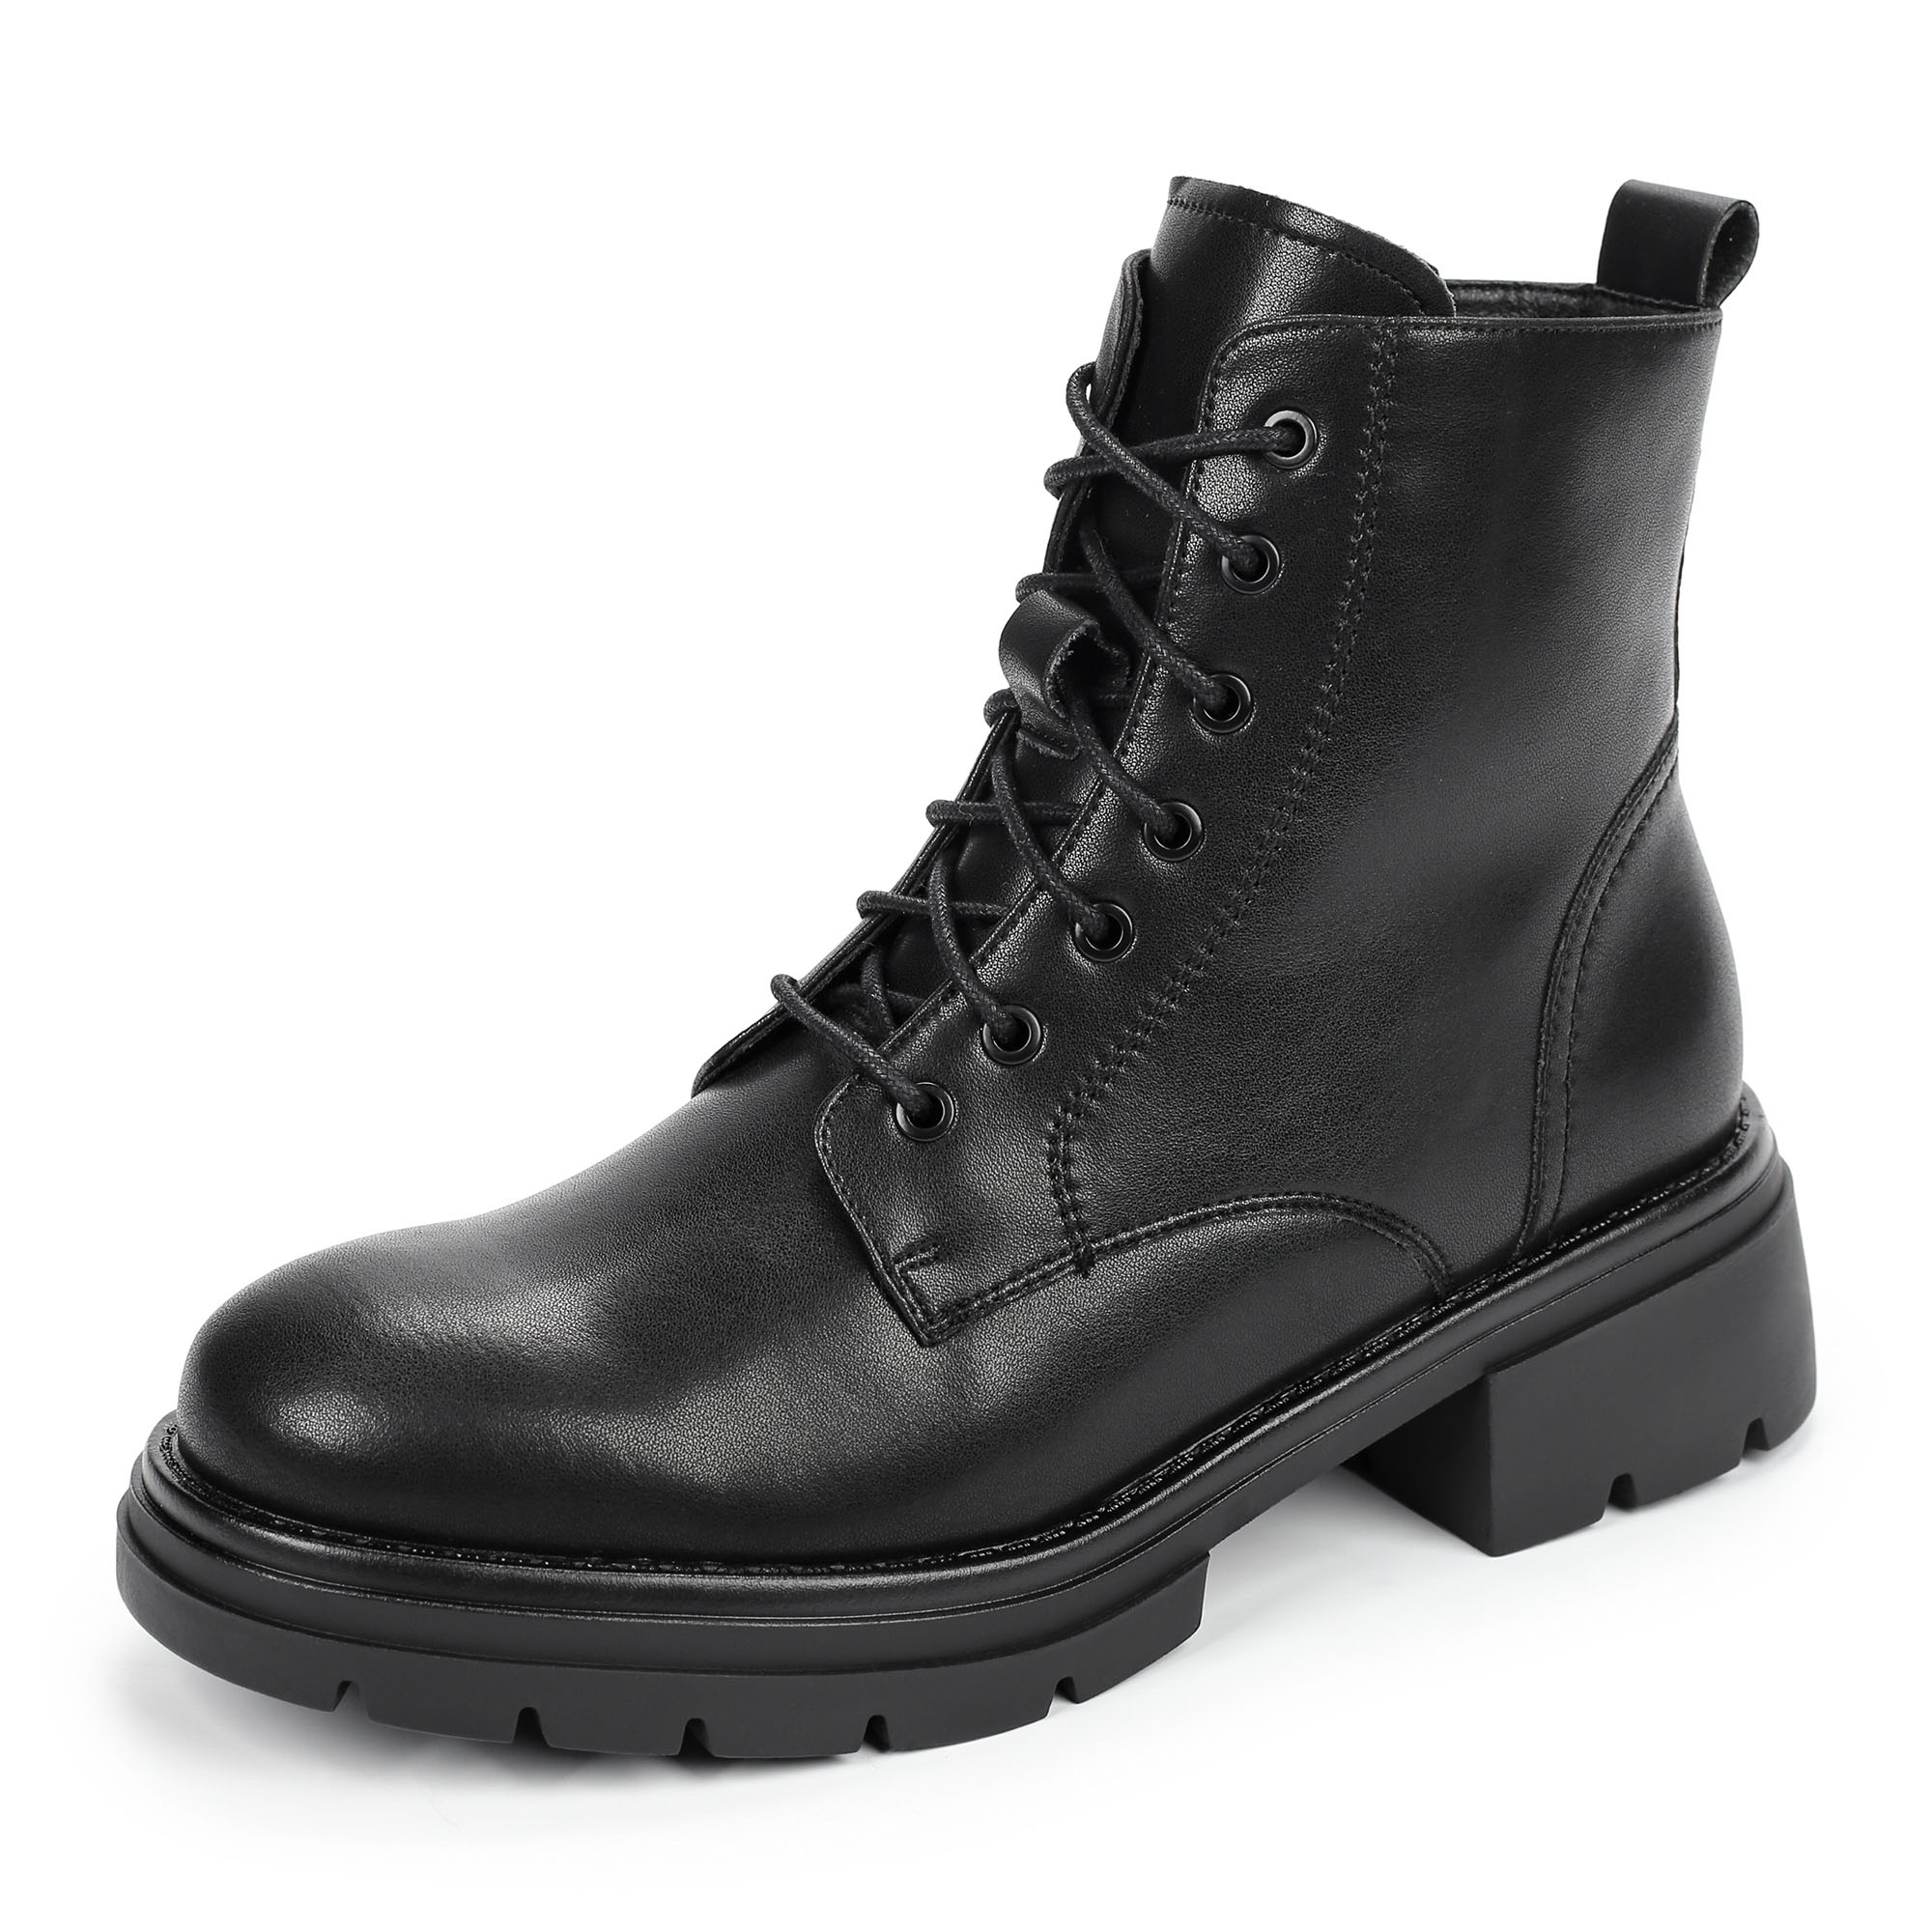 Ботинки Thomas Munz 080-618A-5602, цвет черный, размер 40 - фото 2